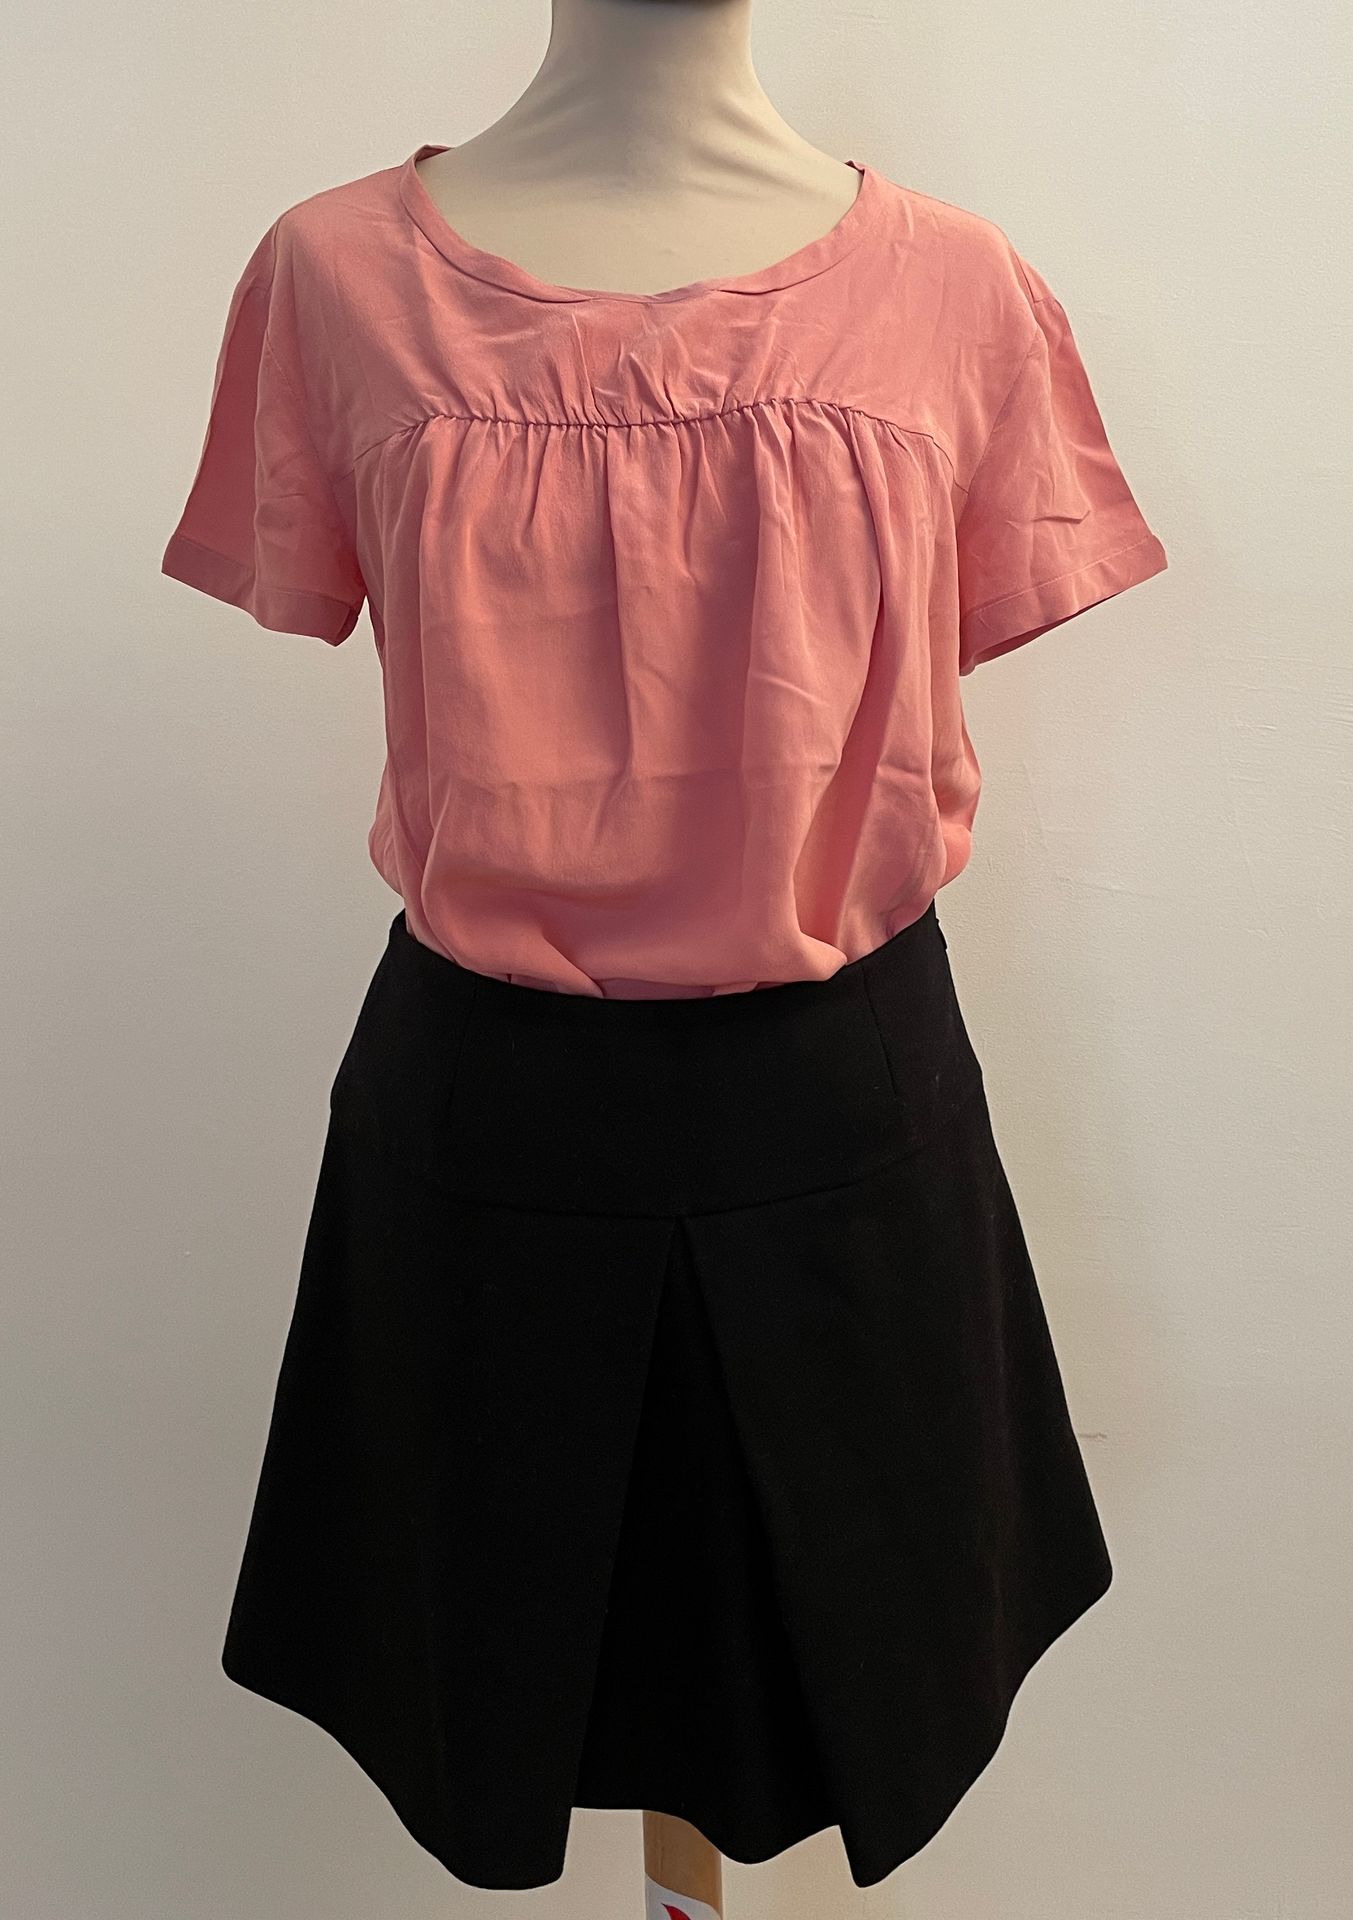 Null MIU MIU

套装包括黑色羊毛短裙和粉色丝绸上衣。

裙子，38号，腰部宽度35厘米，顶部从腰部到衣服底部42厘米

上衣尺寸为38厘米，肩部宽度&hellip;